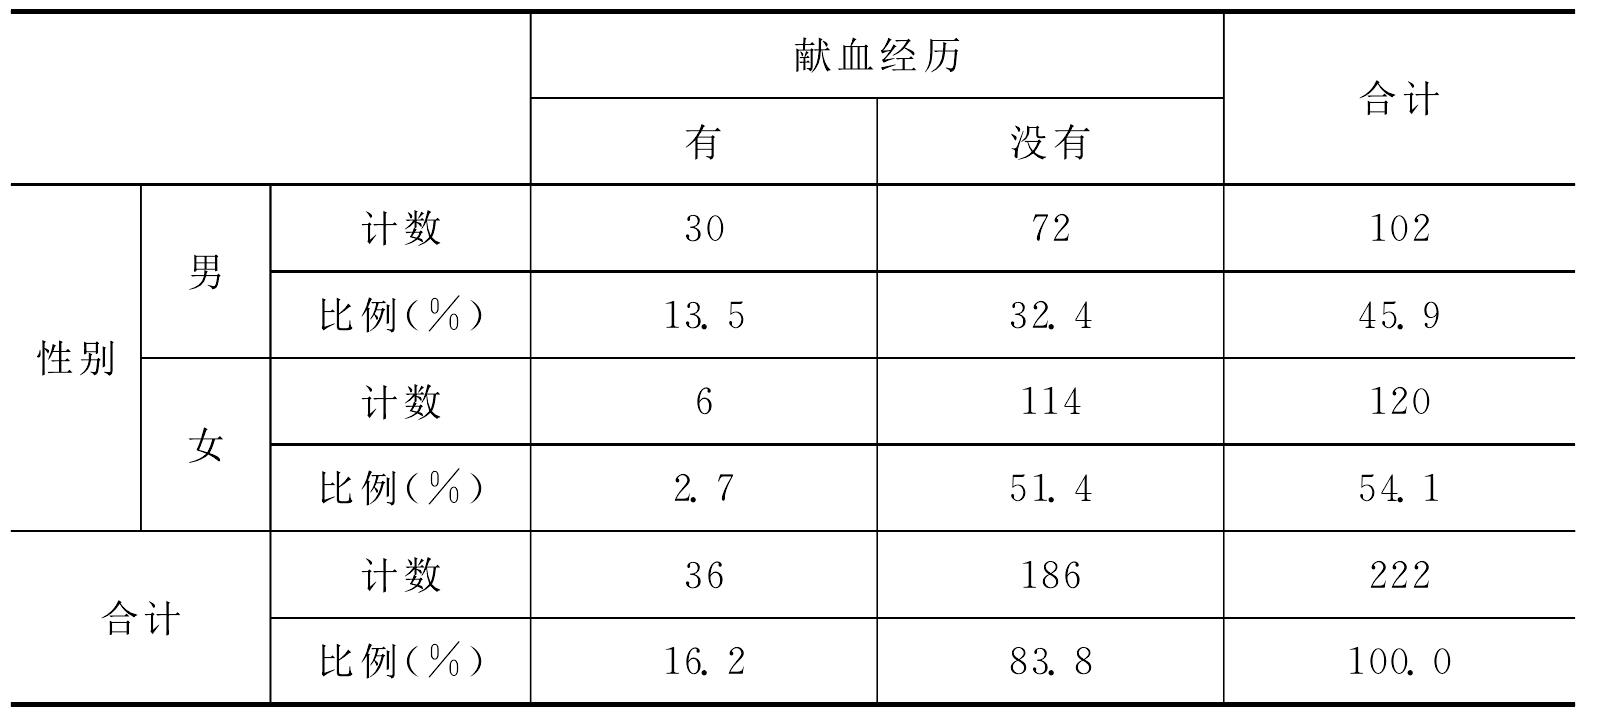 关于浦江县献血加分政策的民意调查